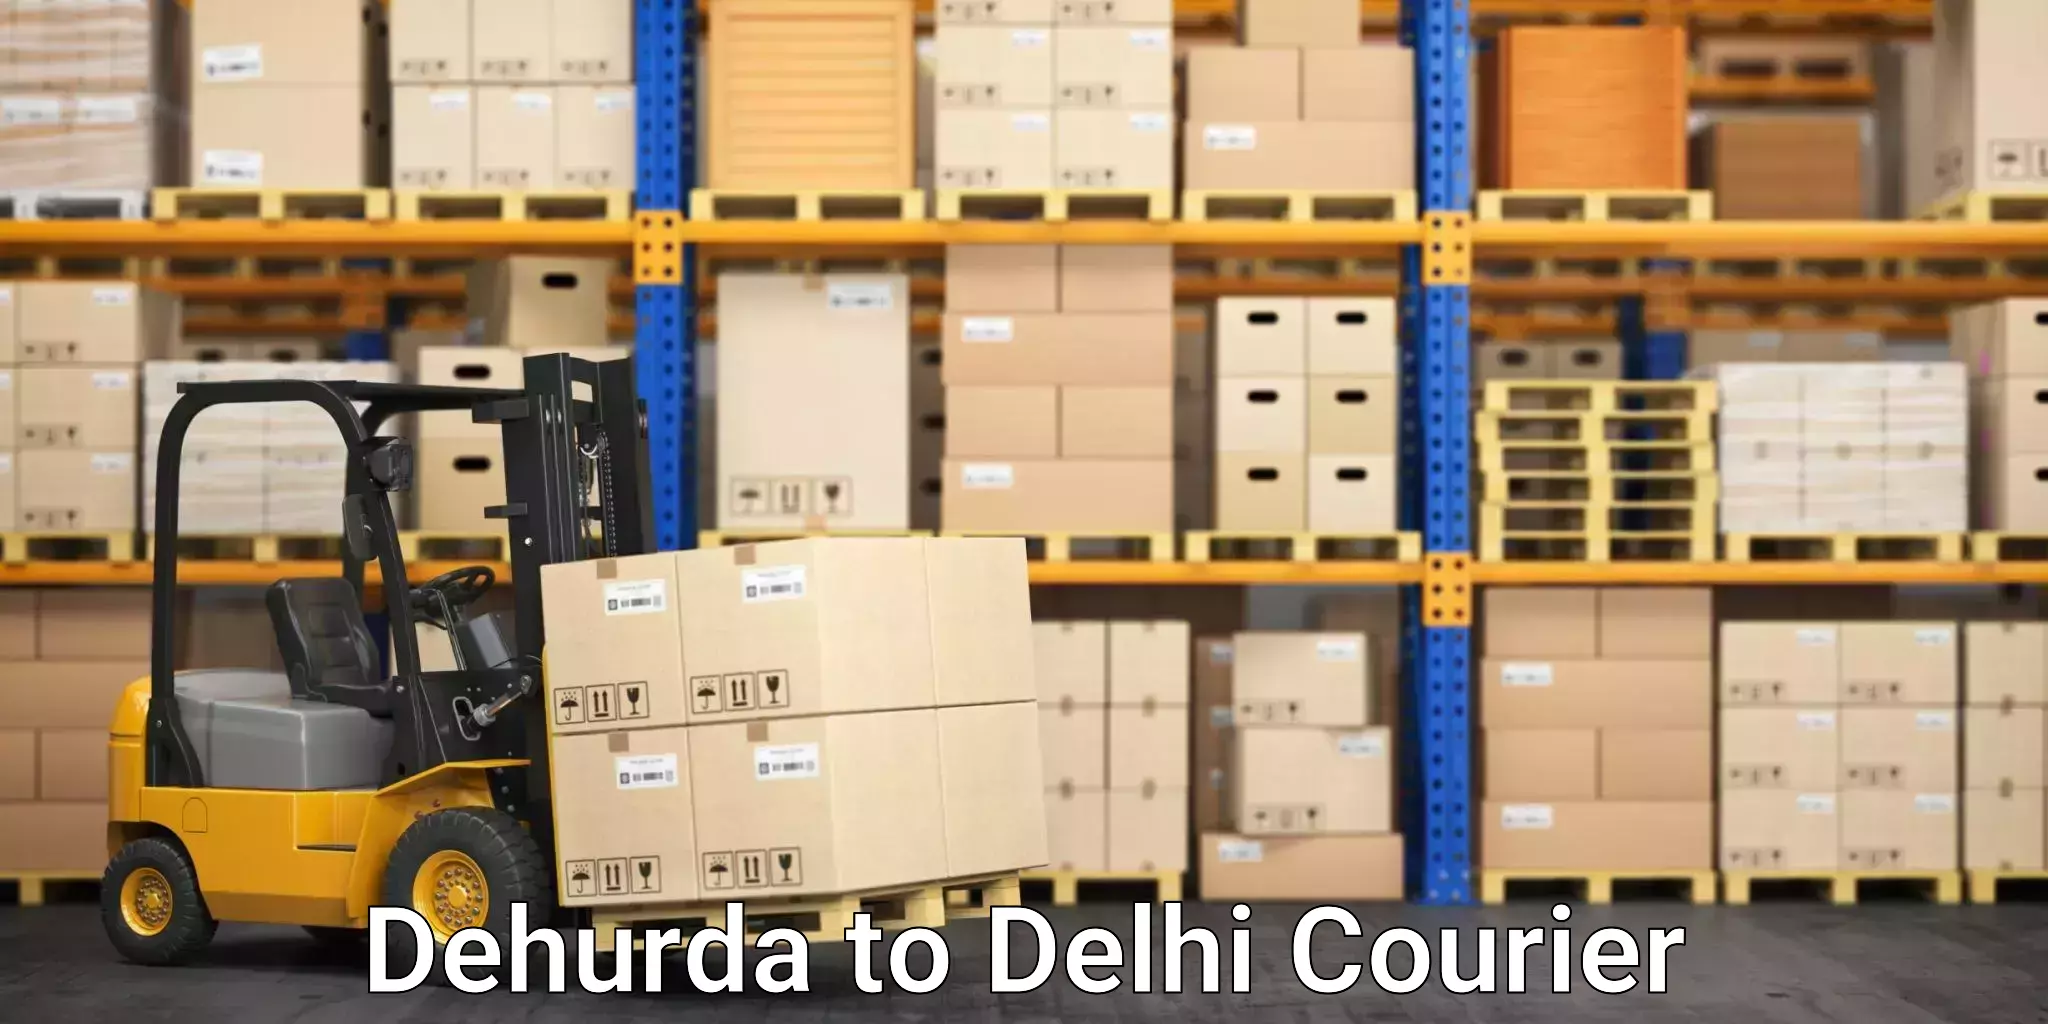 Efficient cargo services Dehurda to NCR